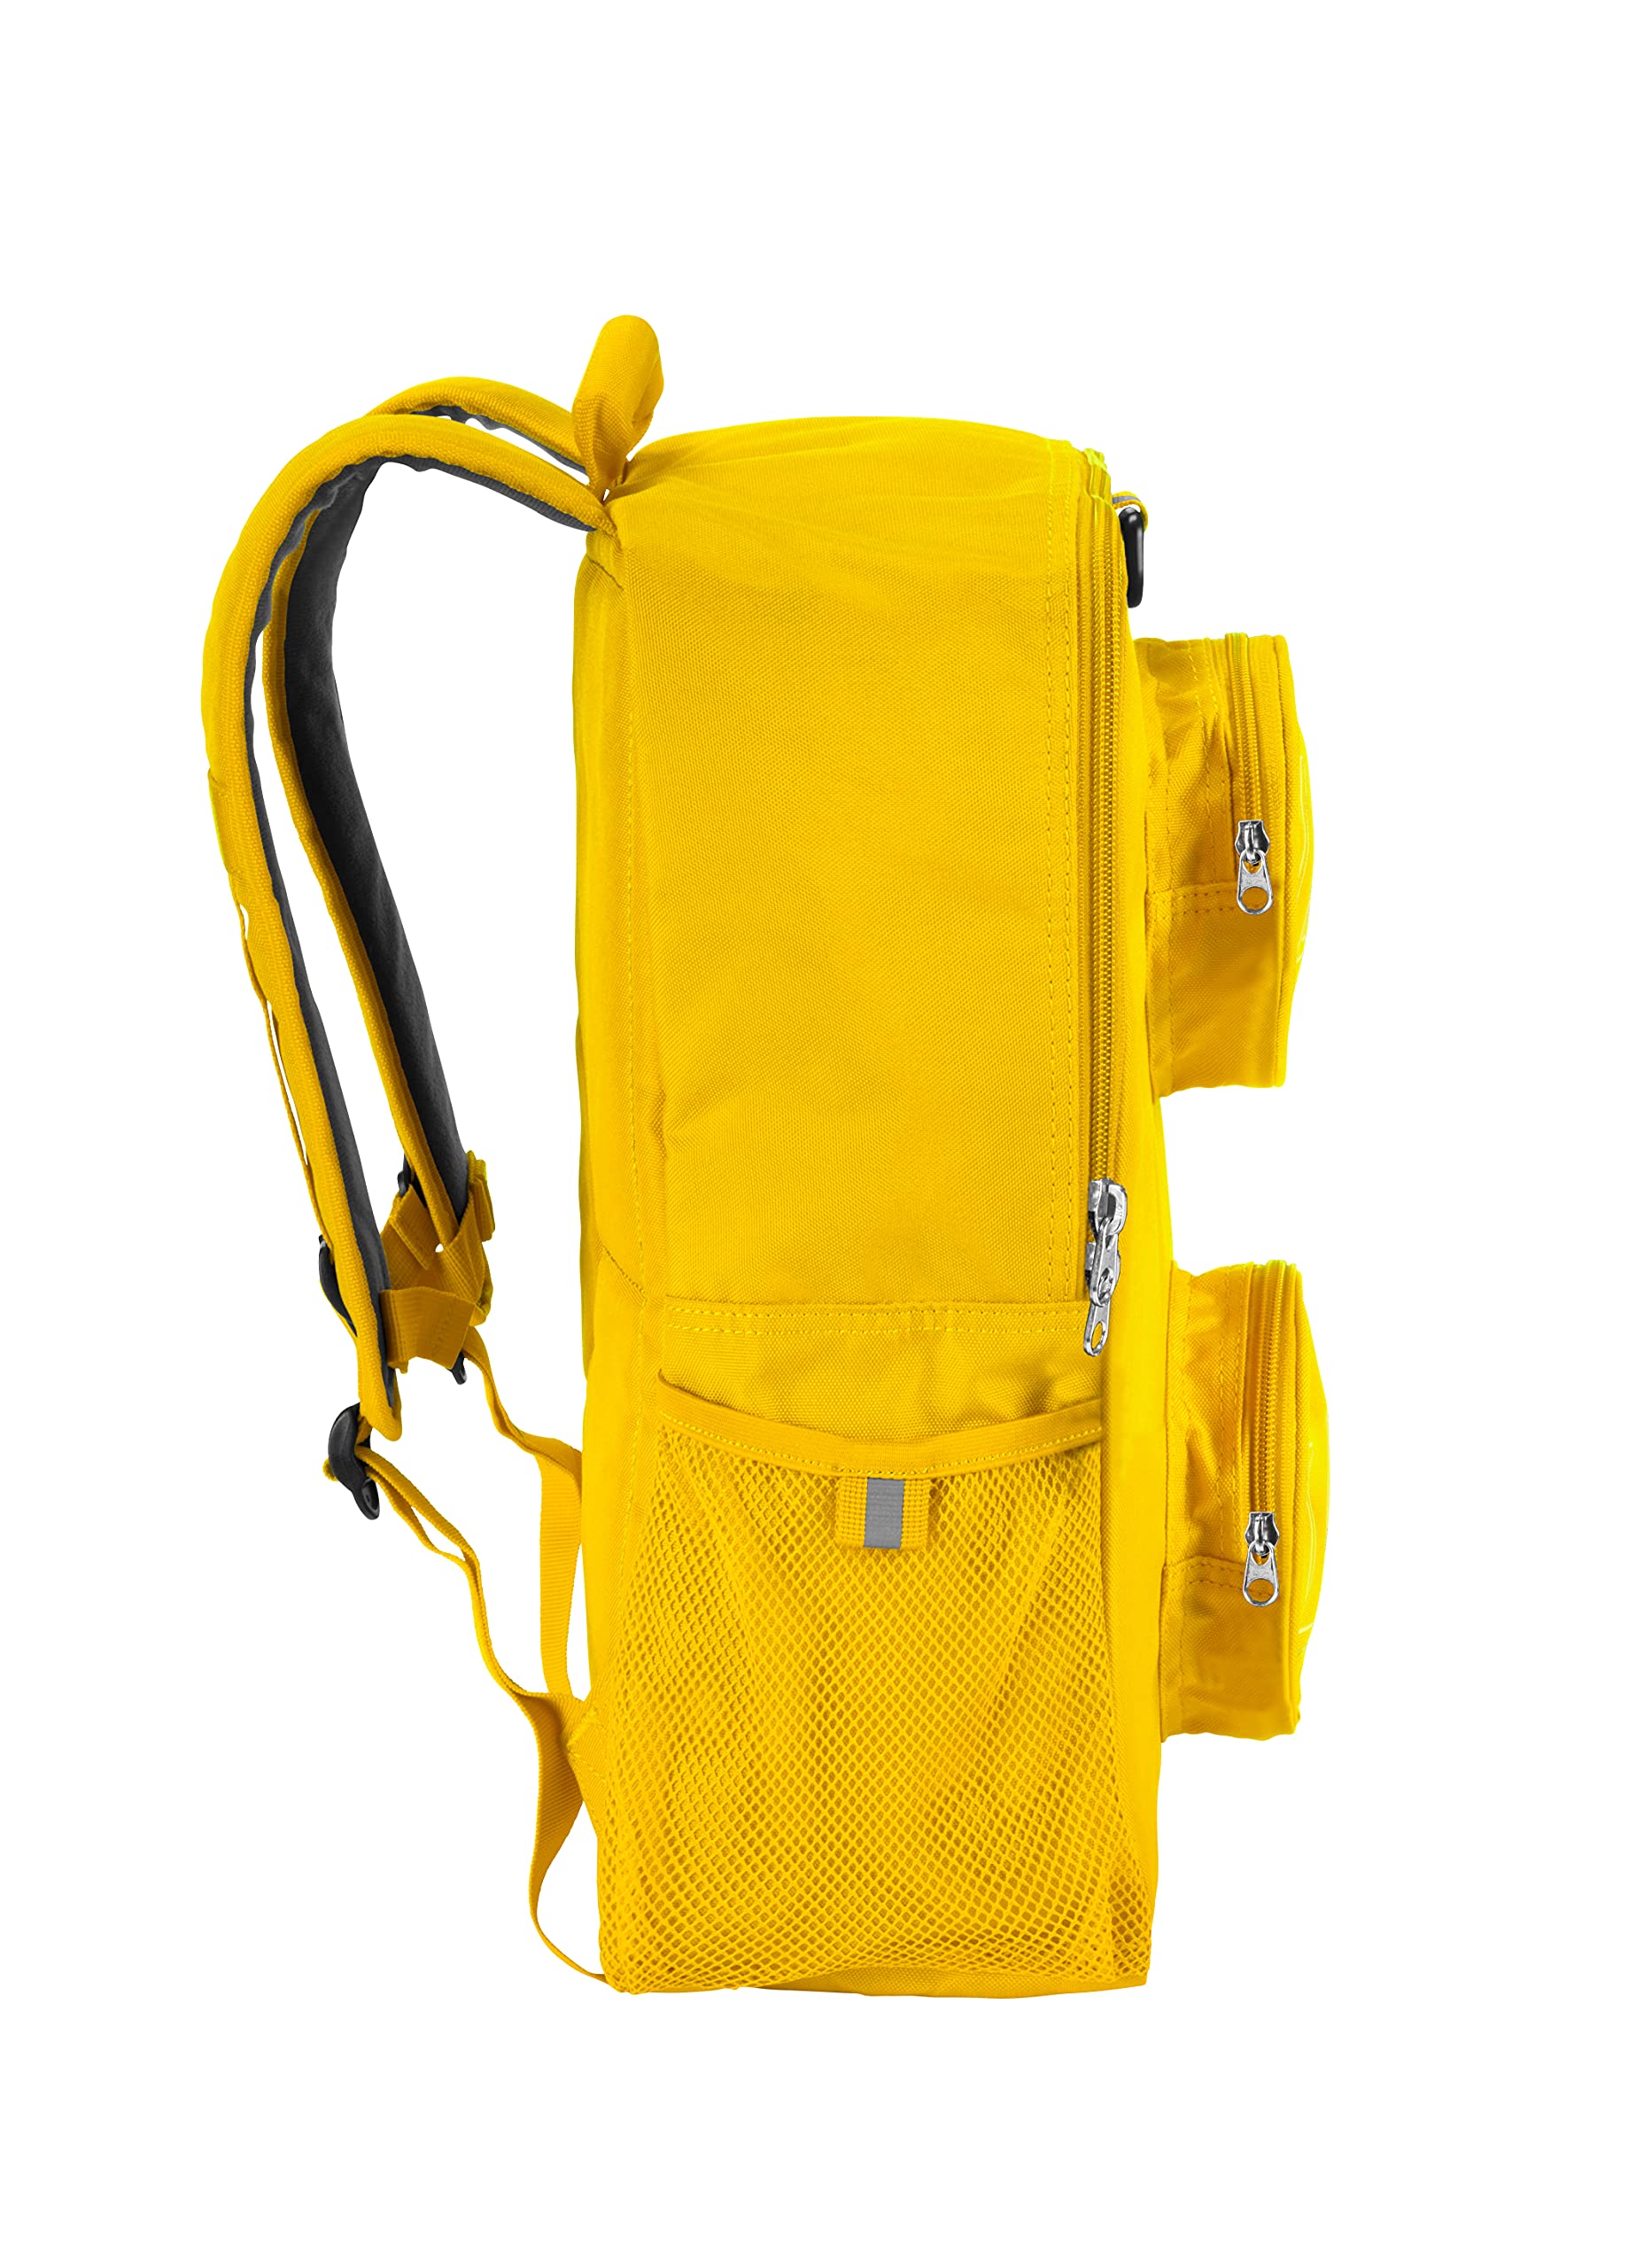 LEGO Brick Backpack, Yellow